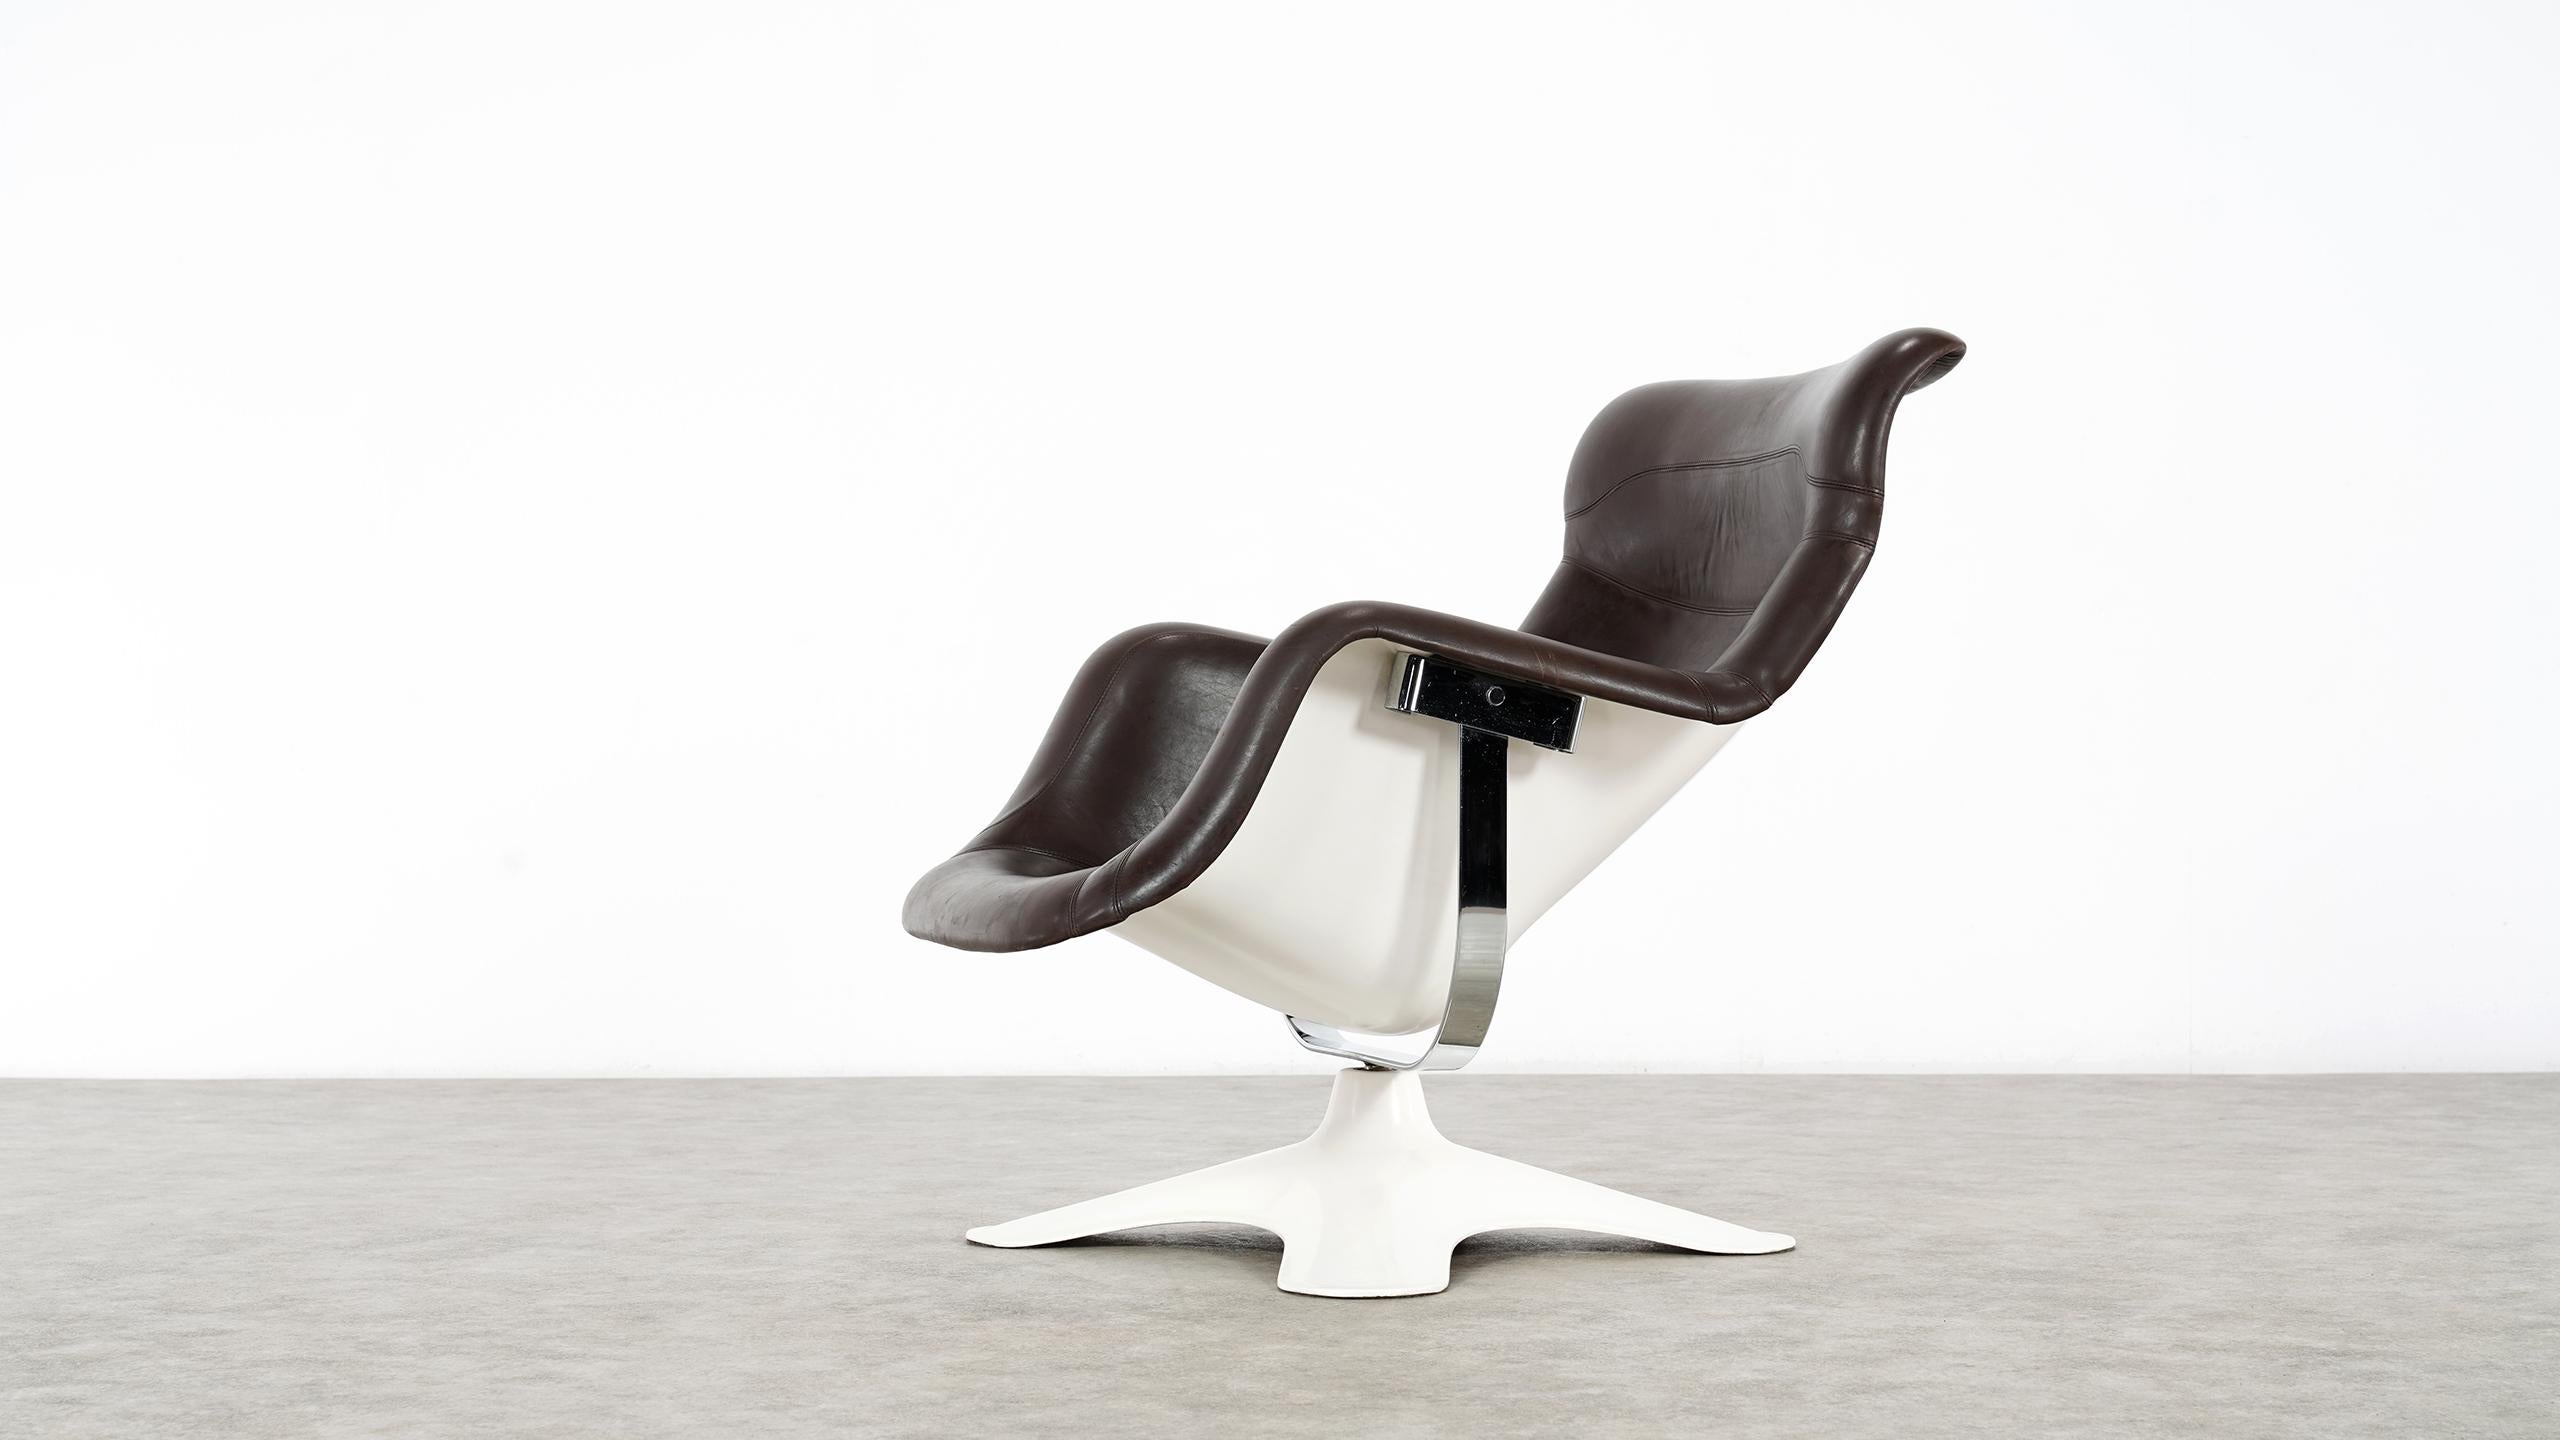 Finnish Karusselli Lounge Chair, Designed in 1964 by Yrjö Kukkapuro for Artek, Finland